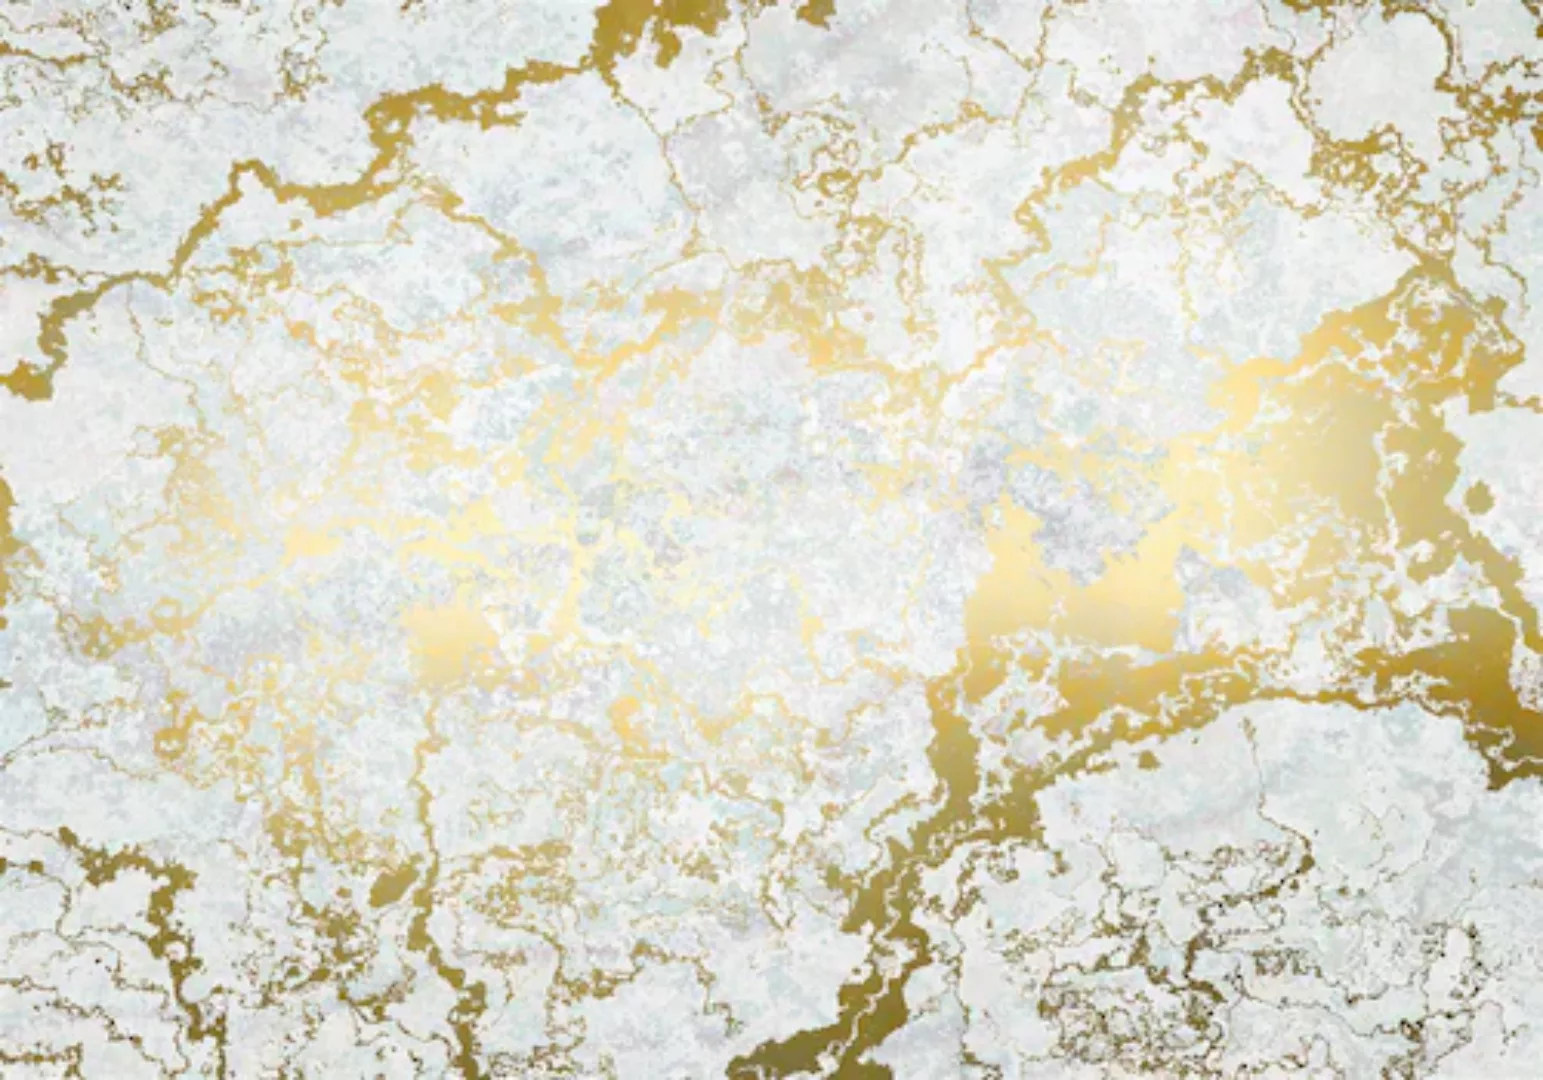 KOMAR Vlies Fototapete - Marbelous - Größe 400 x 280 cm mehrfarbig günstig online kaufen